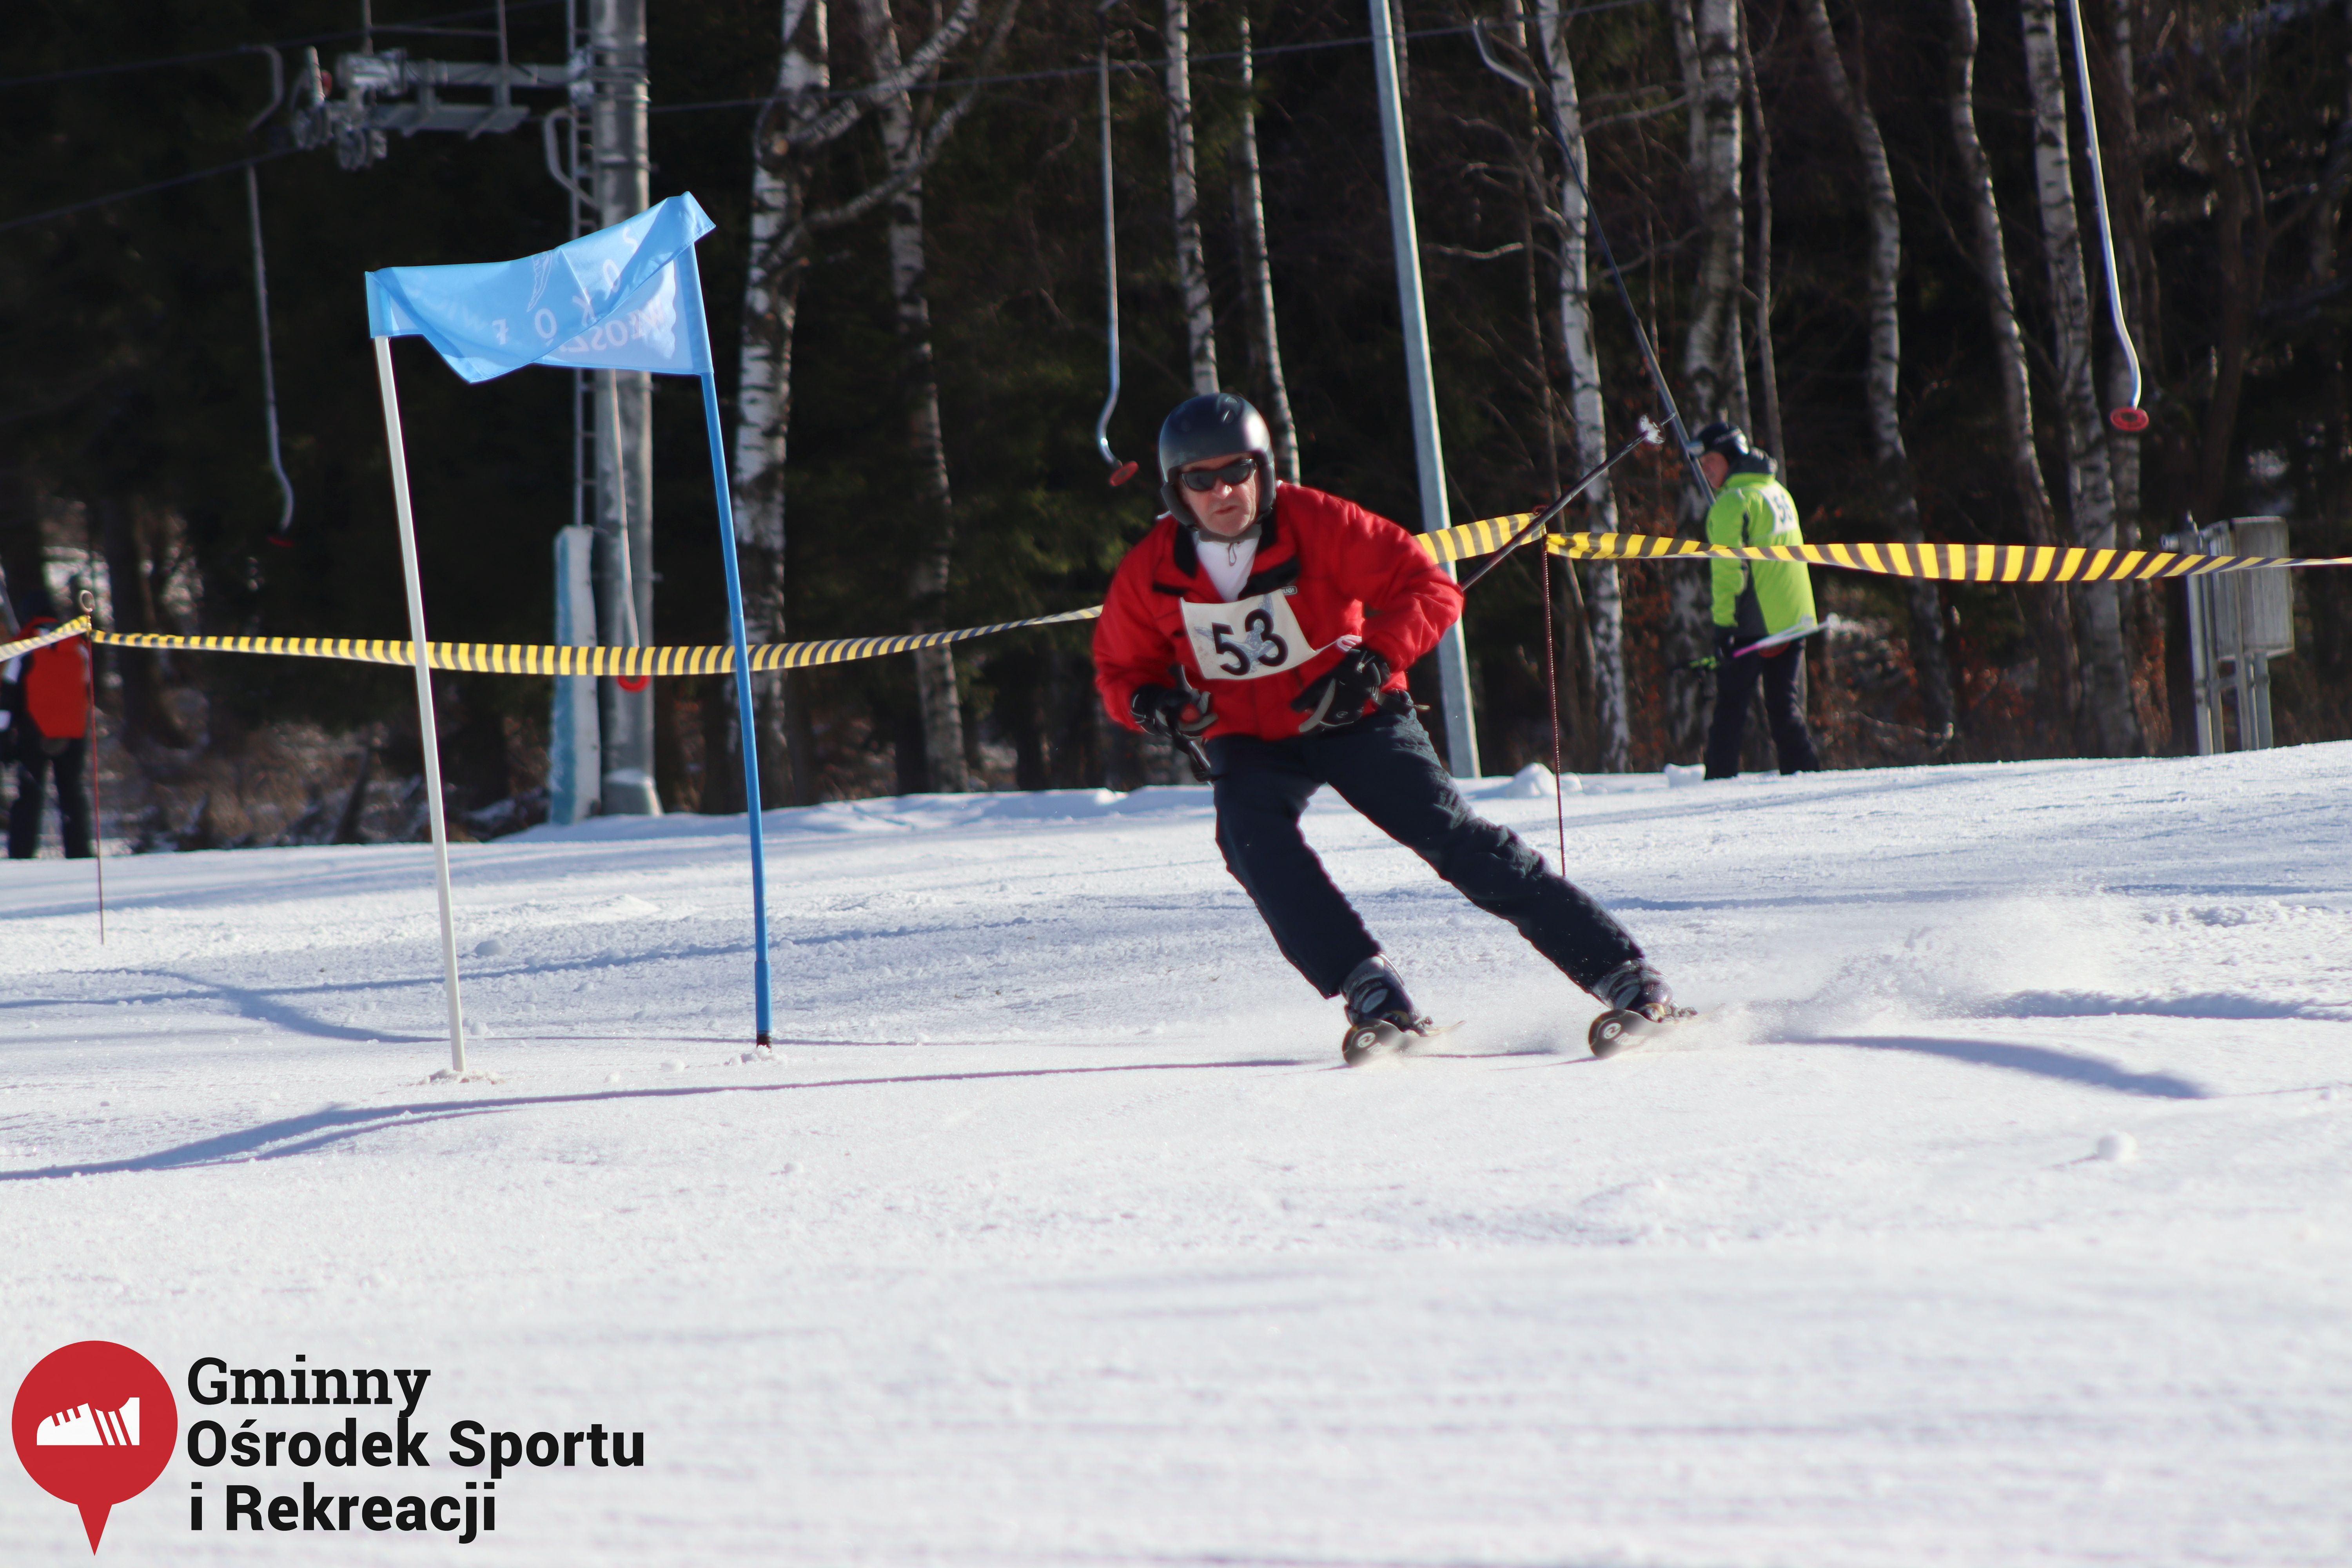 2022.02.12 - 18. Mistrzostwa Gminy Woszakowice w narciarstwie076.jpg - 1,56 MB